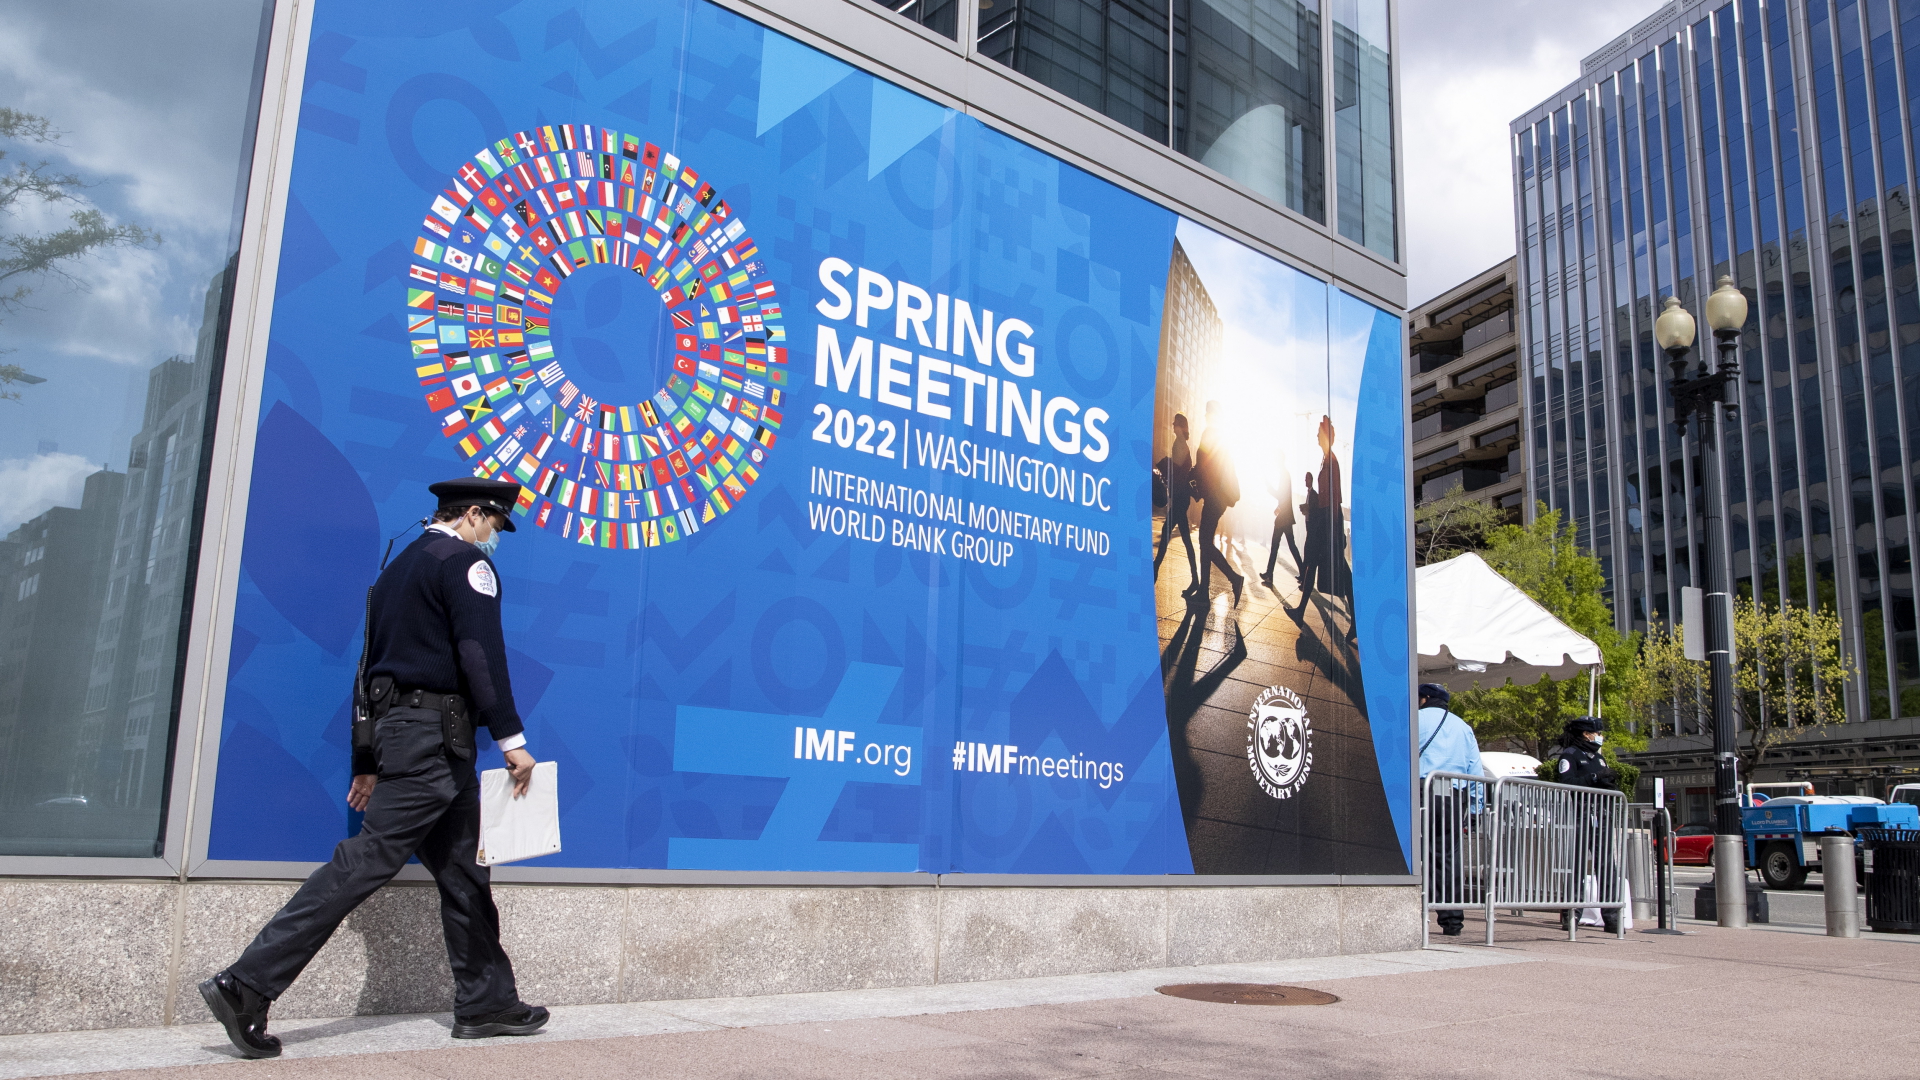 Réunions de printemps BM-FMI: Intenses activités à Washington de la délégation marocaine